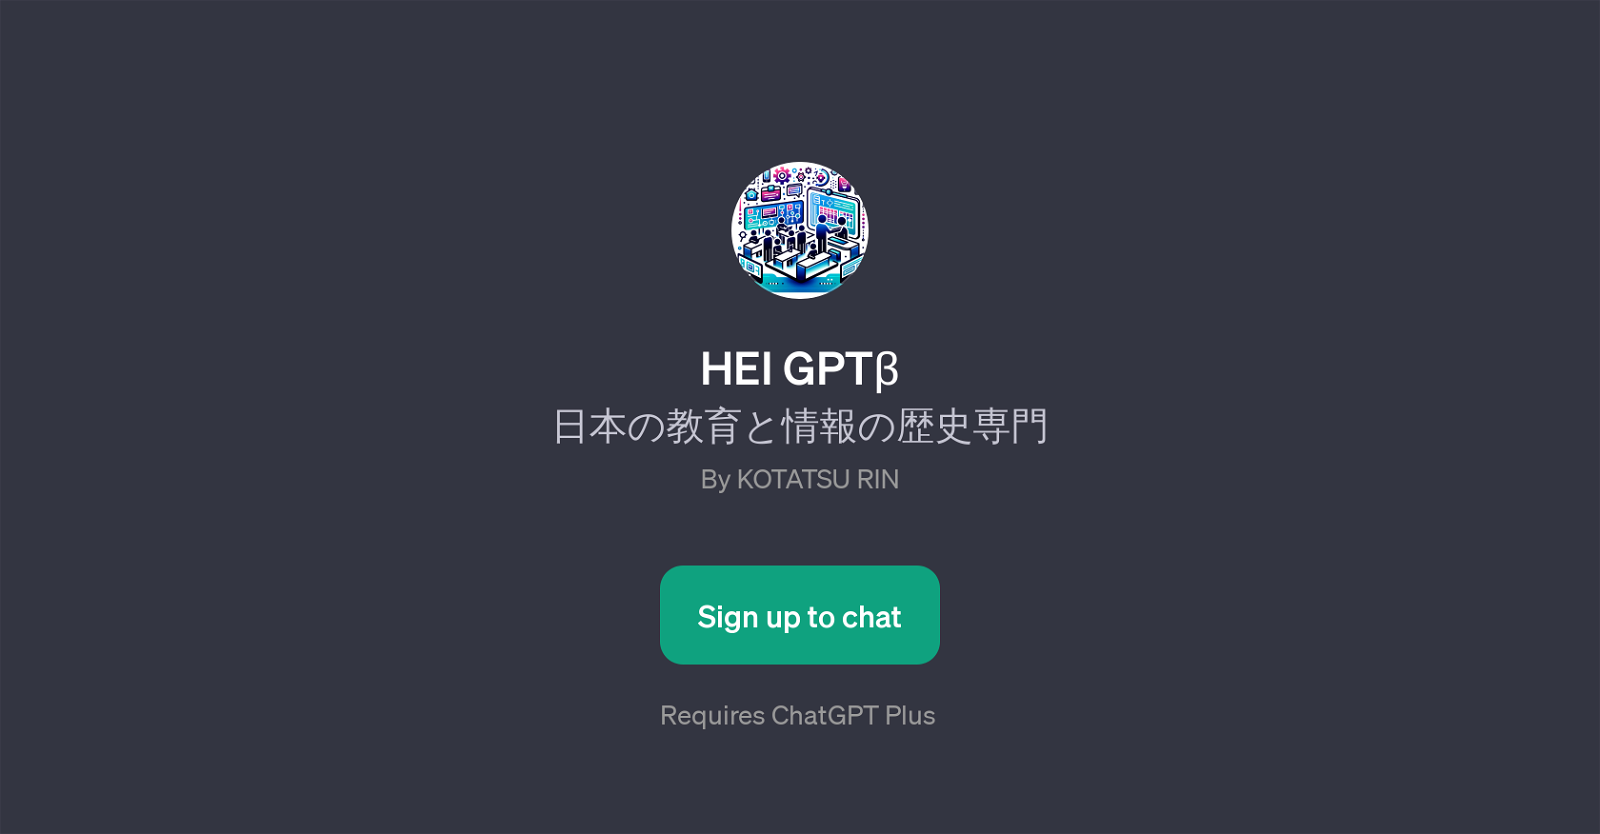 HEI GPT website